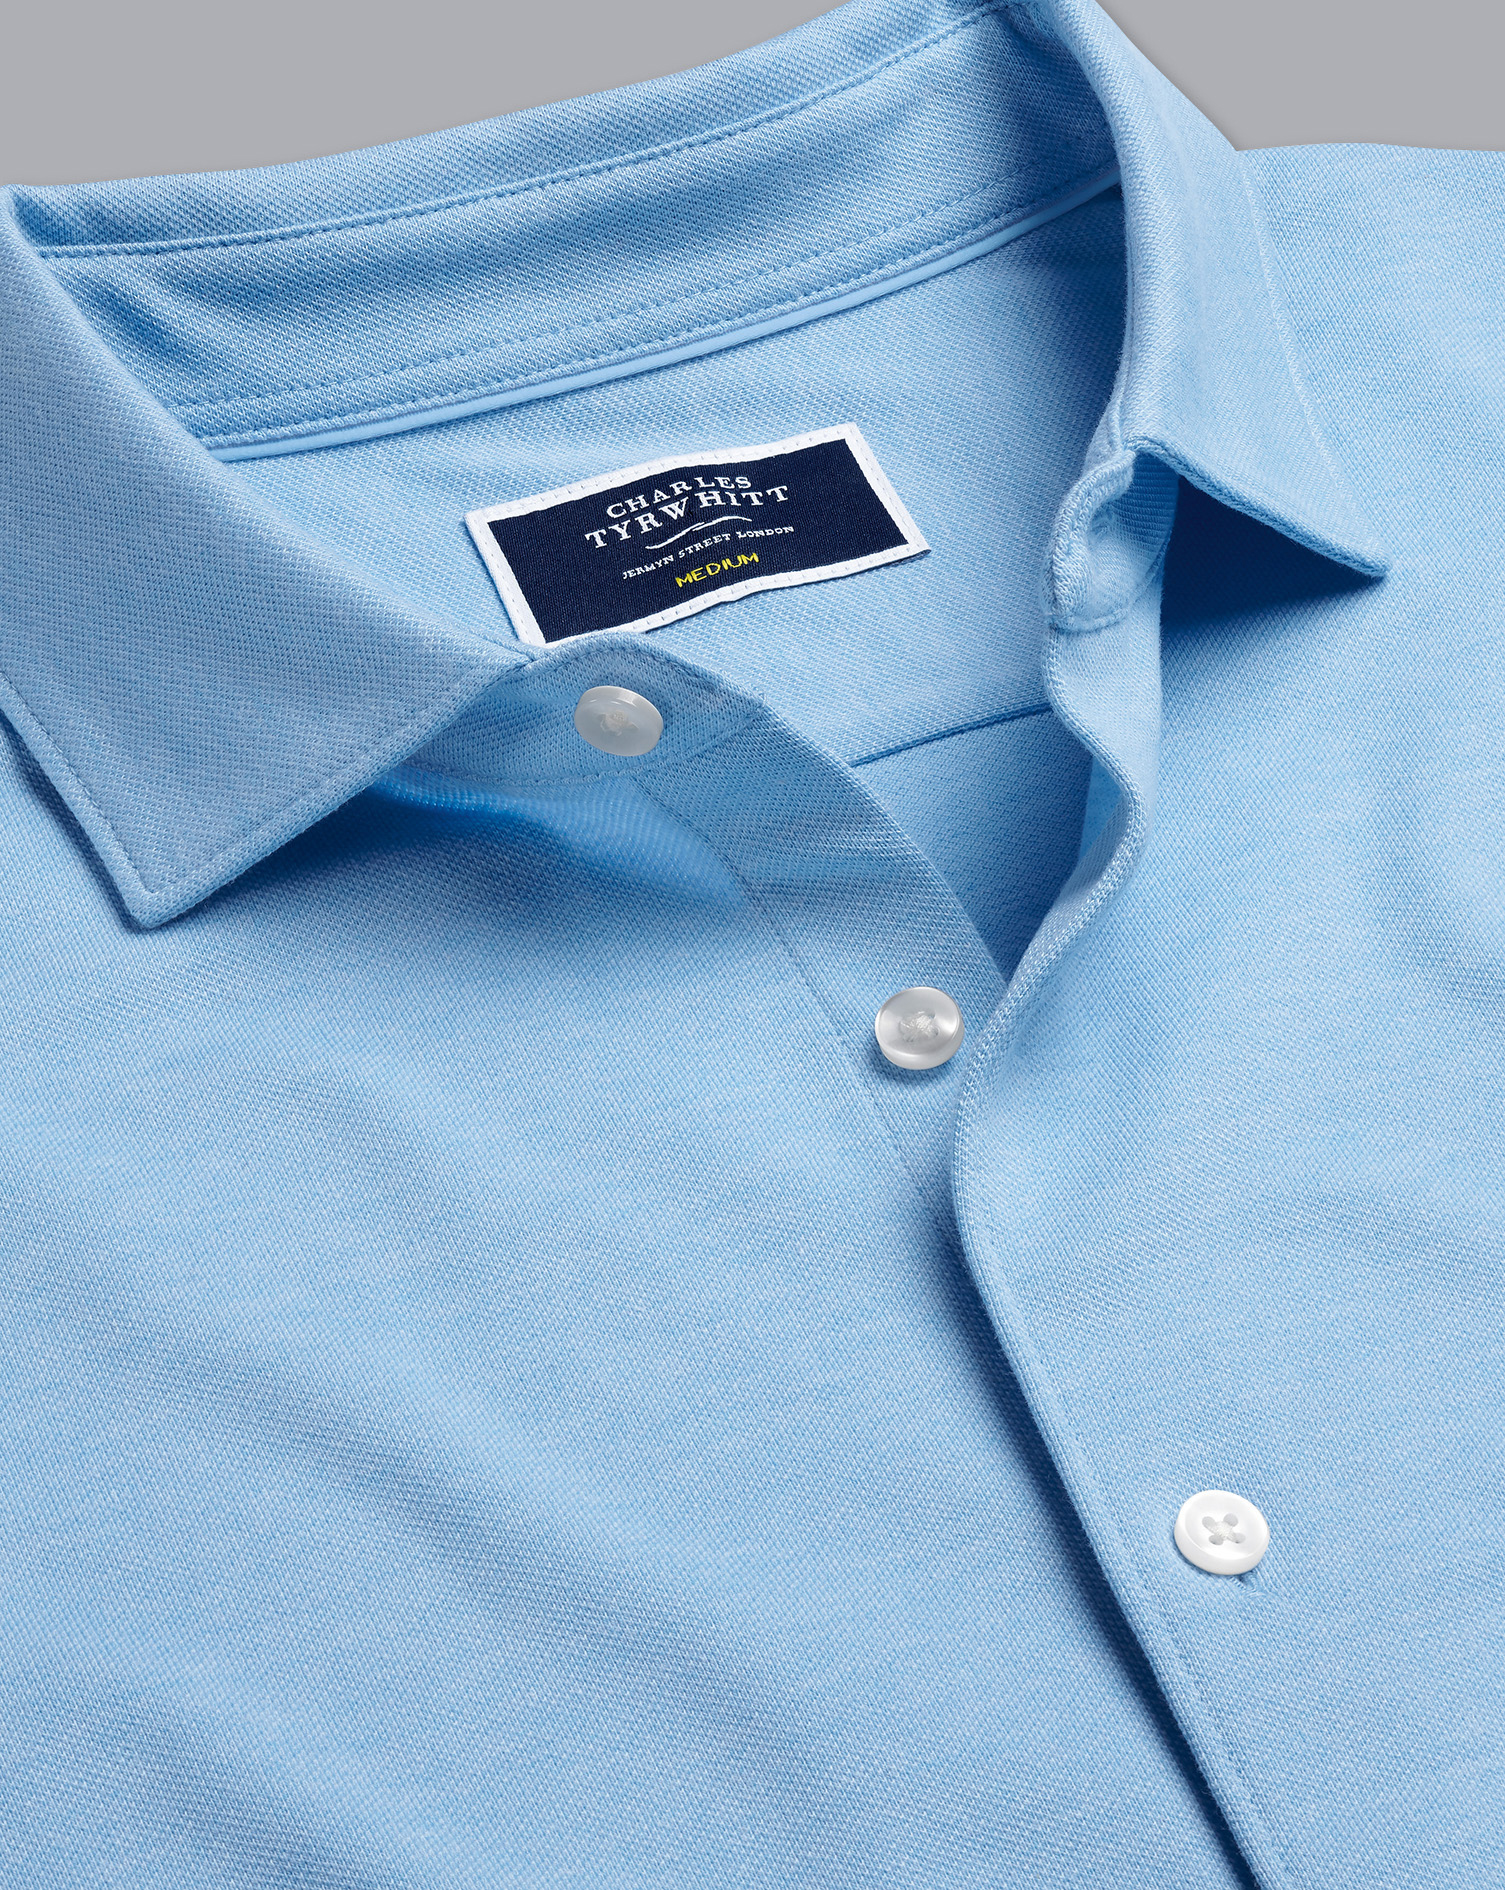 Men's Charles Tyrwhitt Pique Jersey Casual Shirt - Sky Blue Size XXXL Cotton
